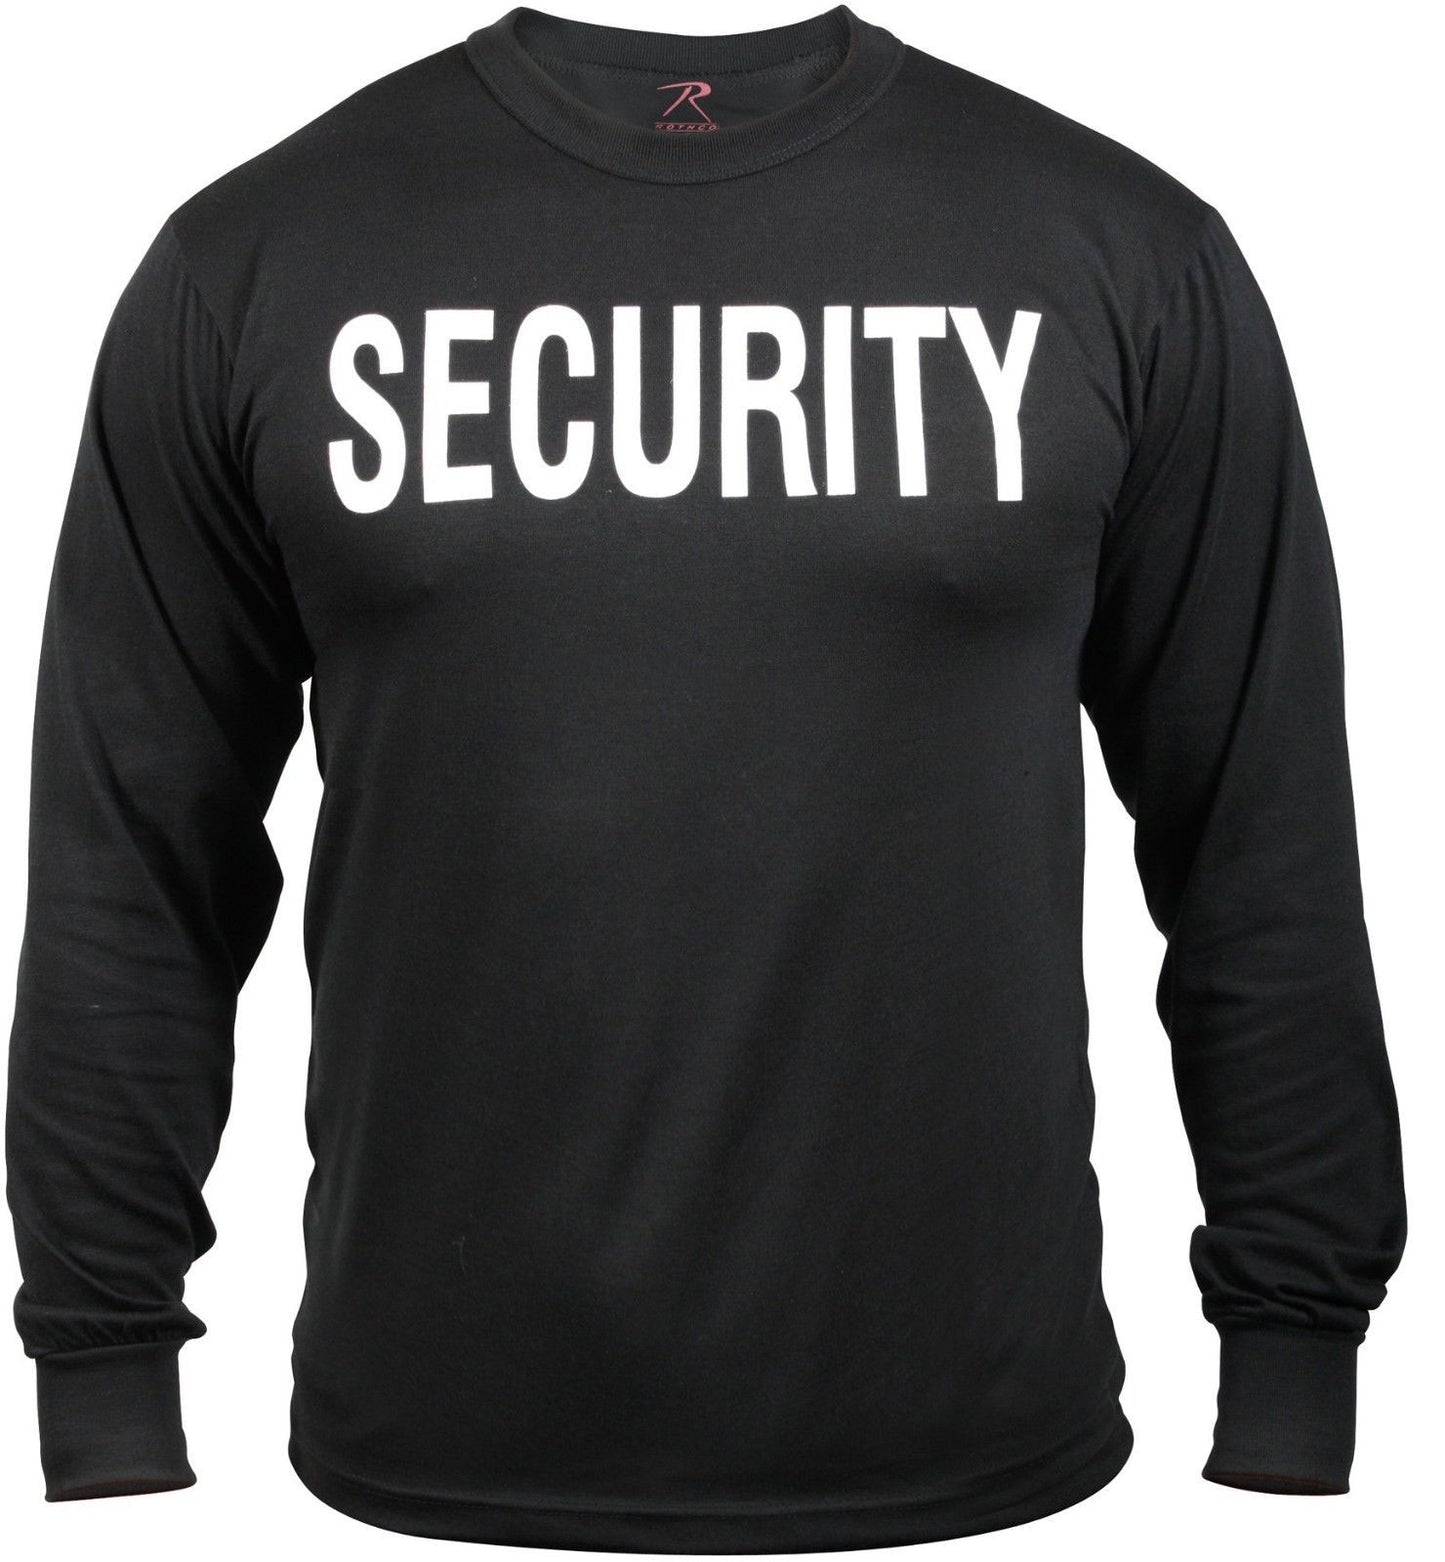 Black 'Security' Shirt - Long Sleeve SECURITY Shirt